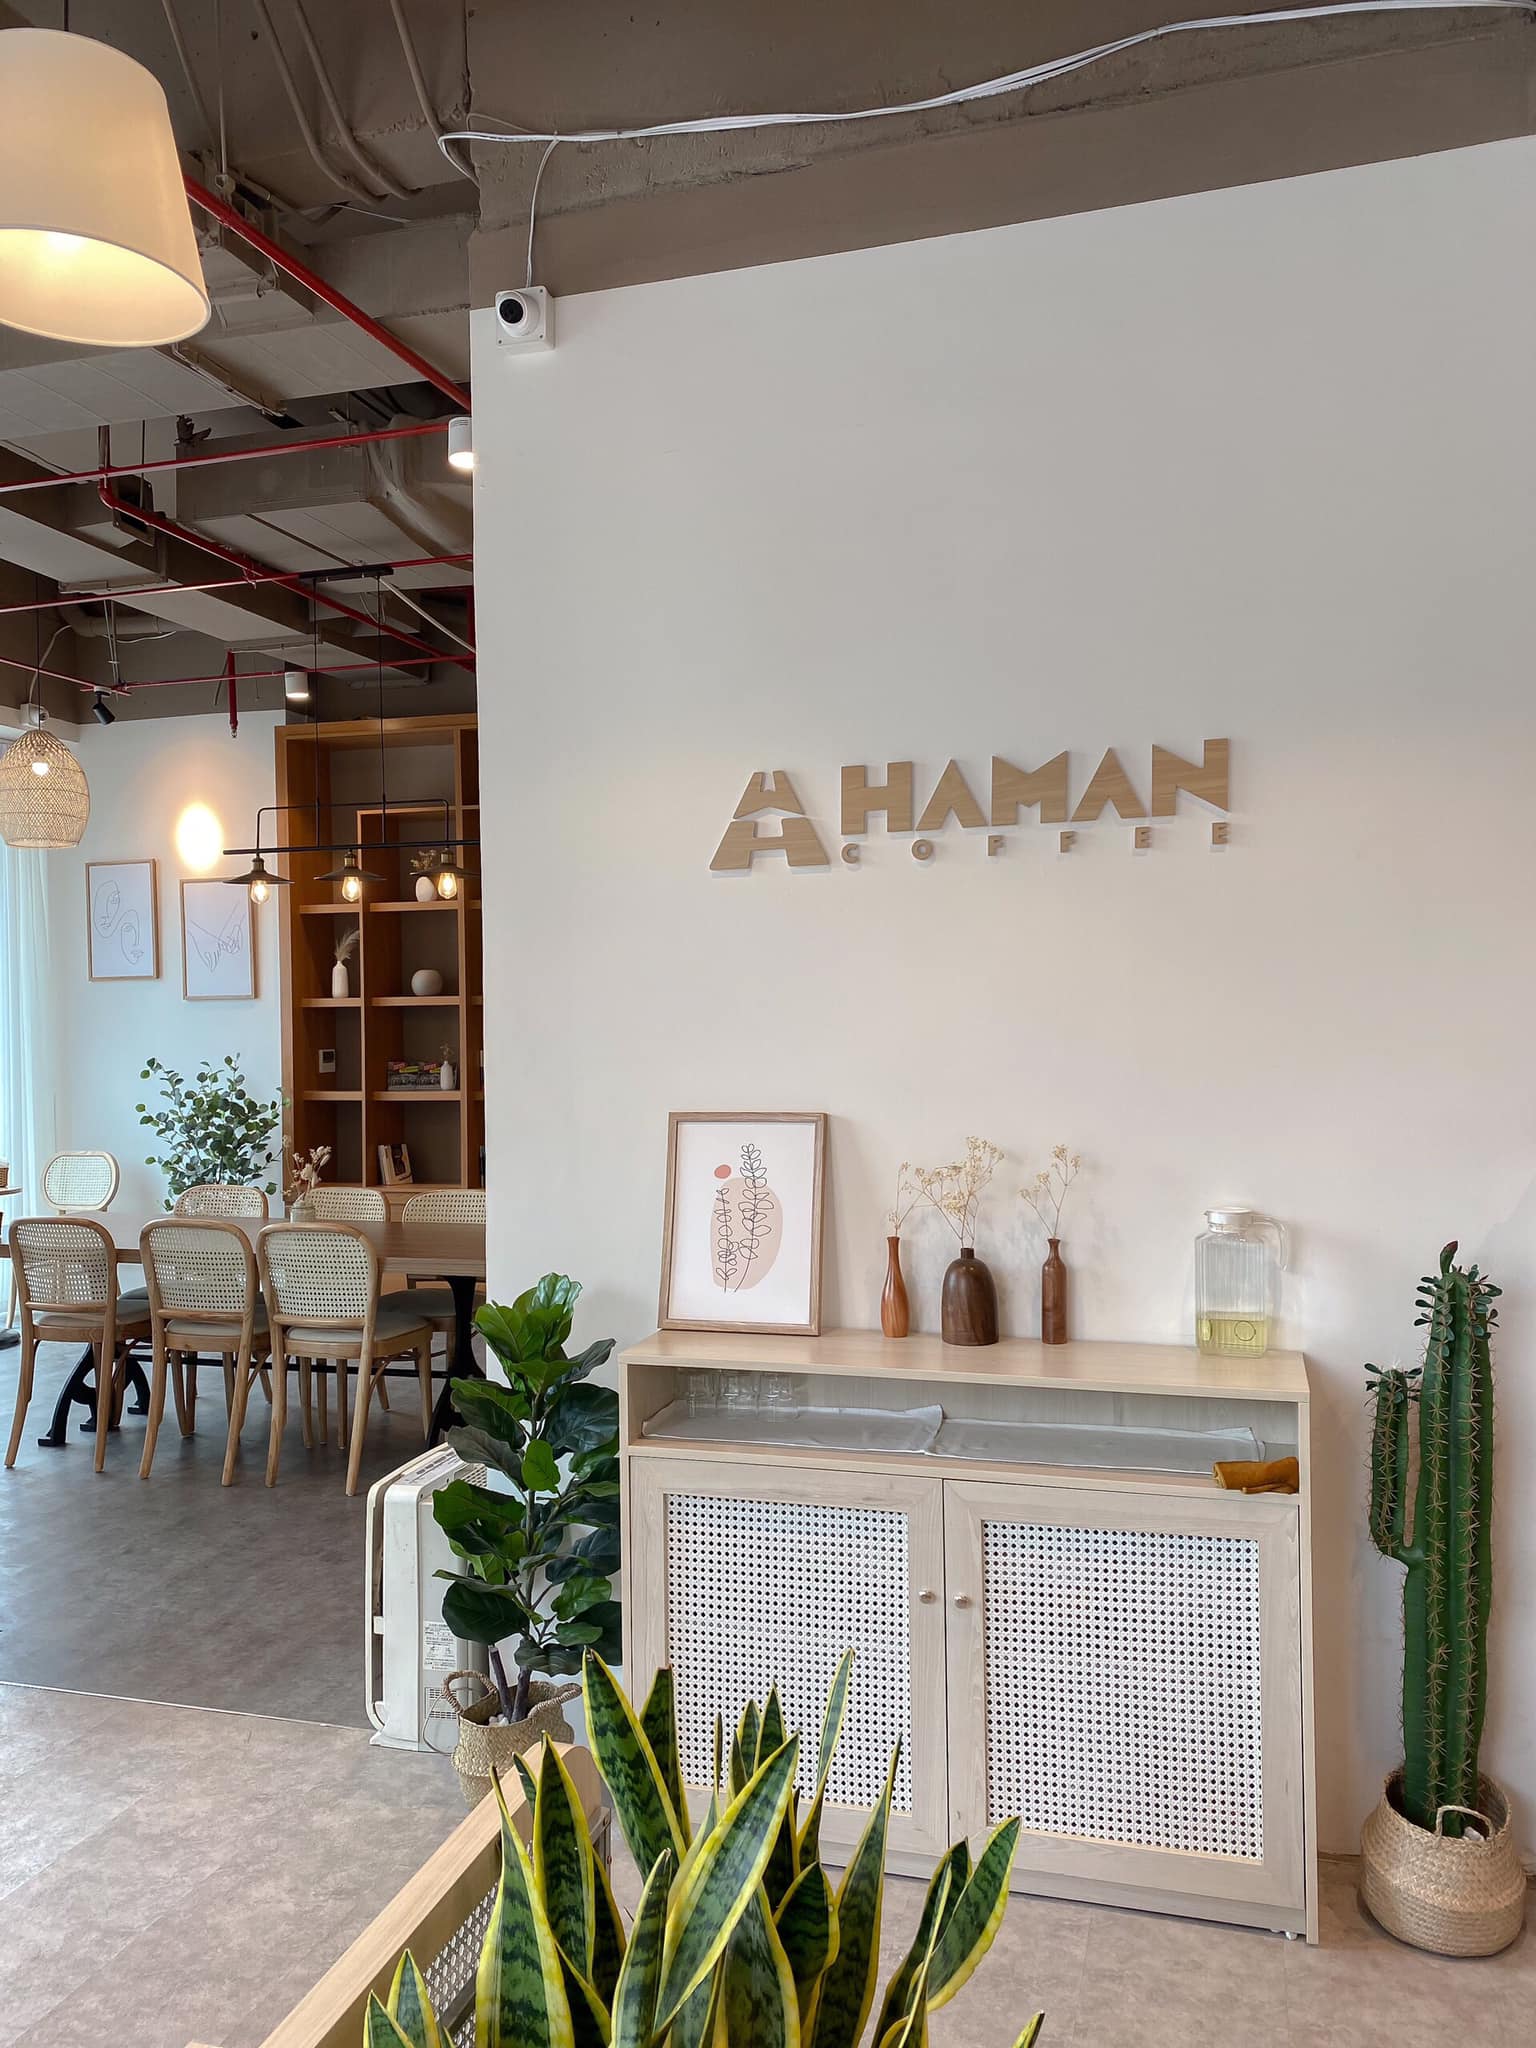 Giới thiệu đôi nét về Haman Coffee